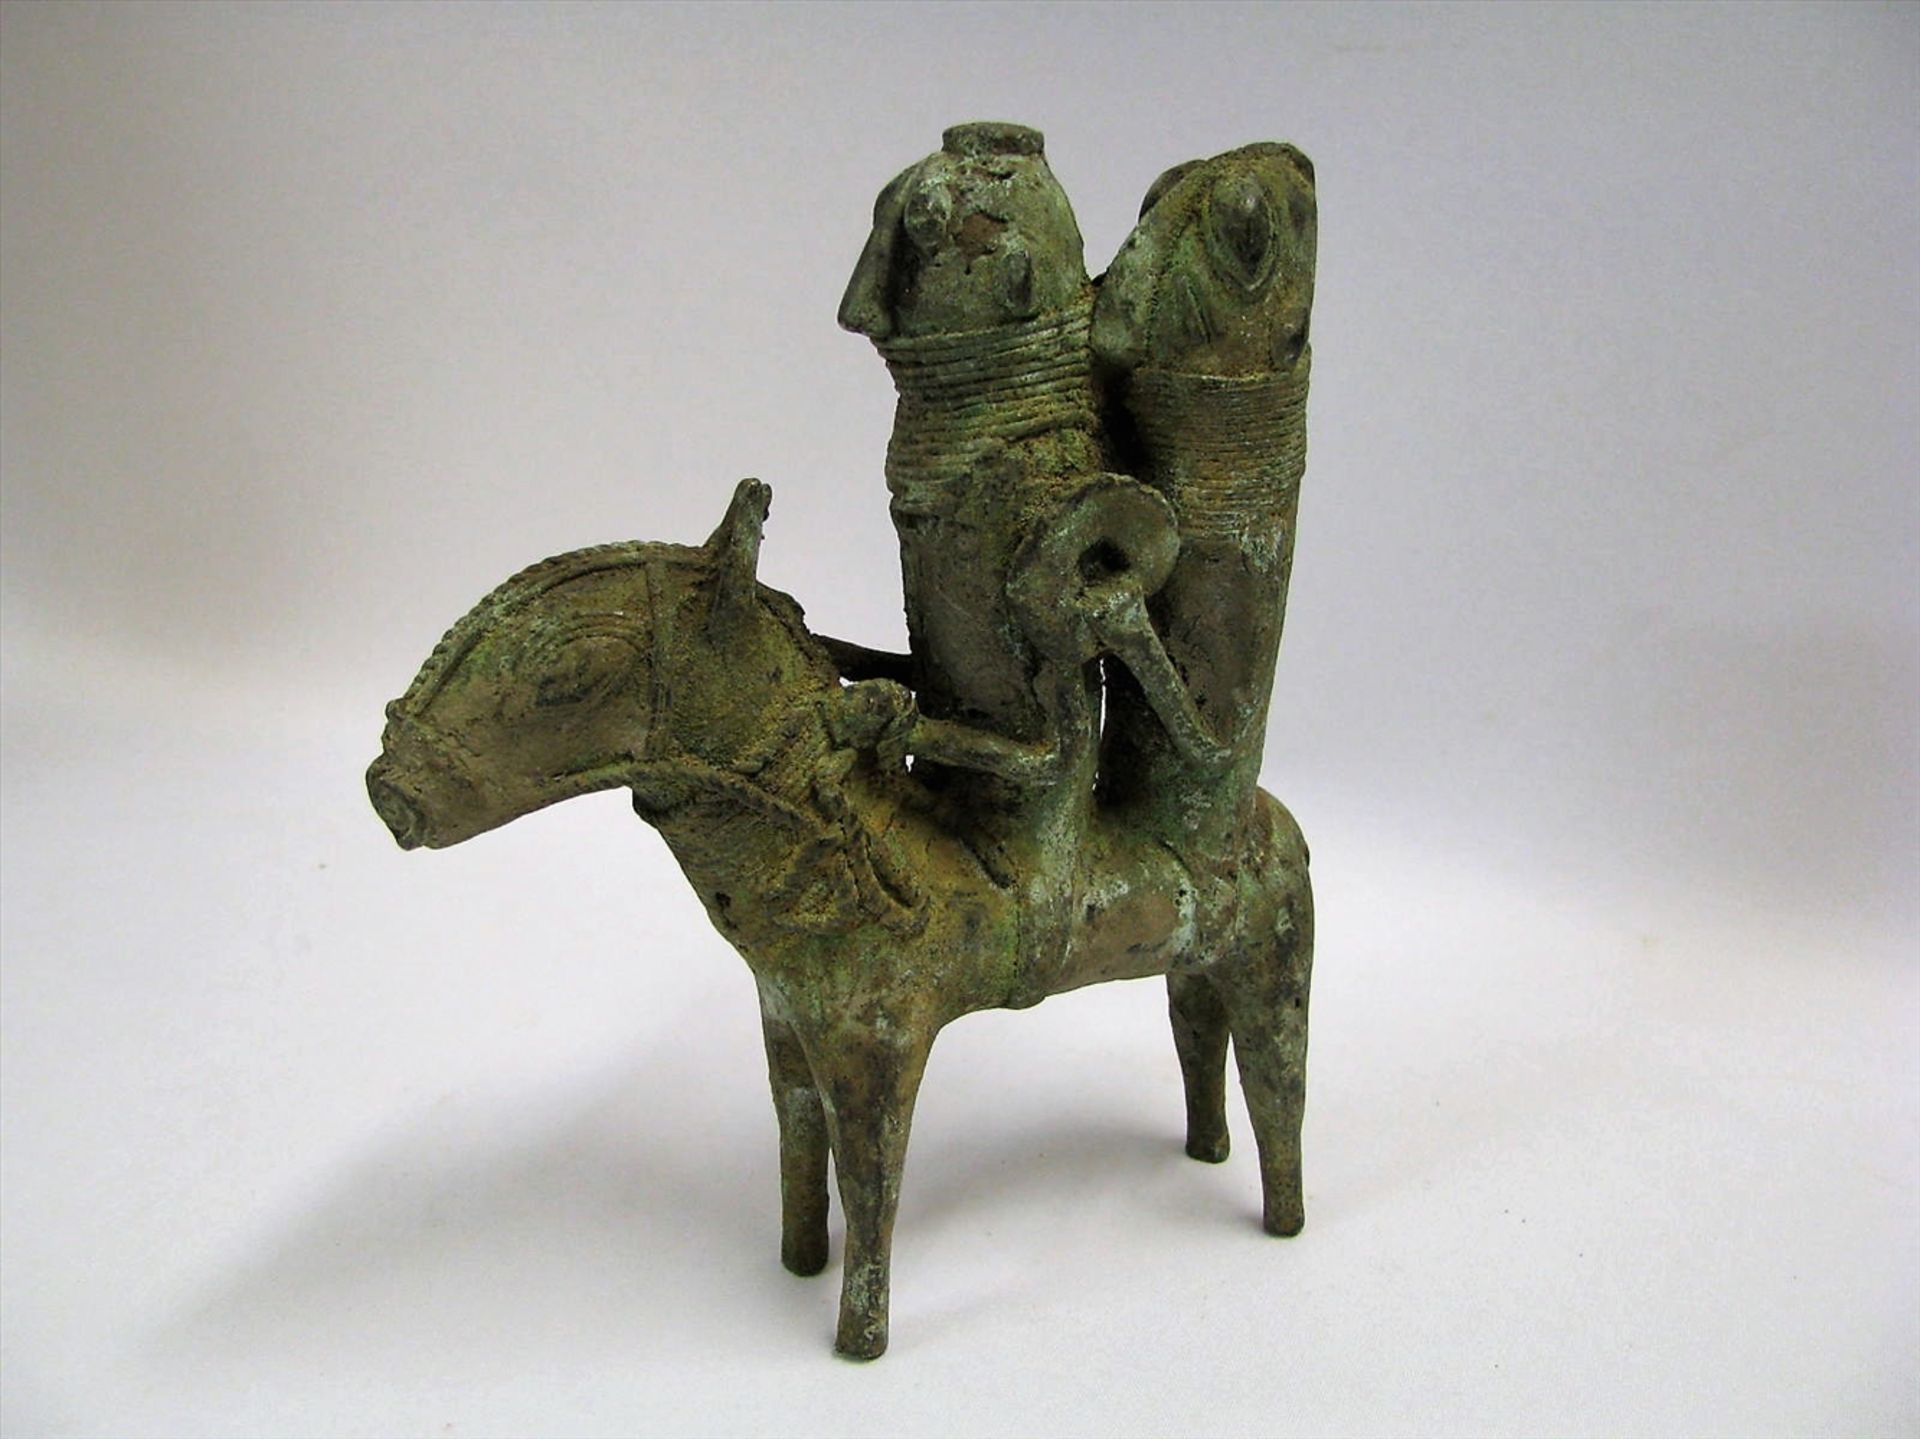 Zwei Reiter auf Esel, Afrika, Benin, Bronze oxidiert, 19 x 16 x 4,5 cm.- - -19.00 % buyer's